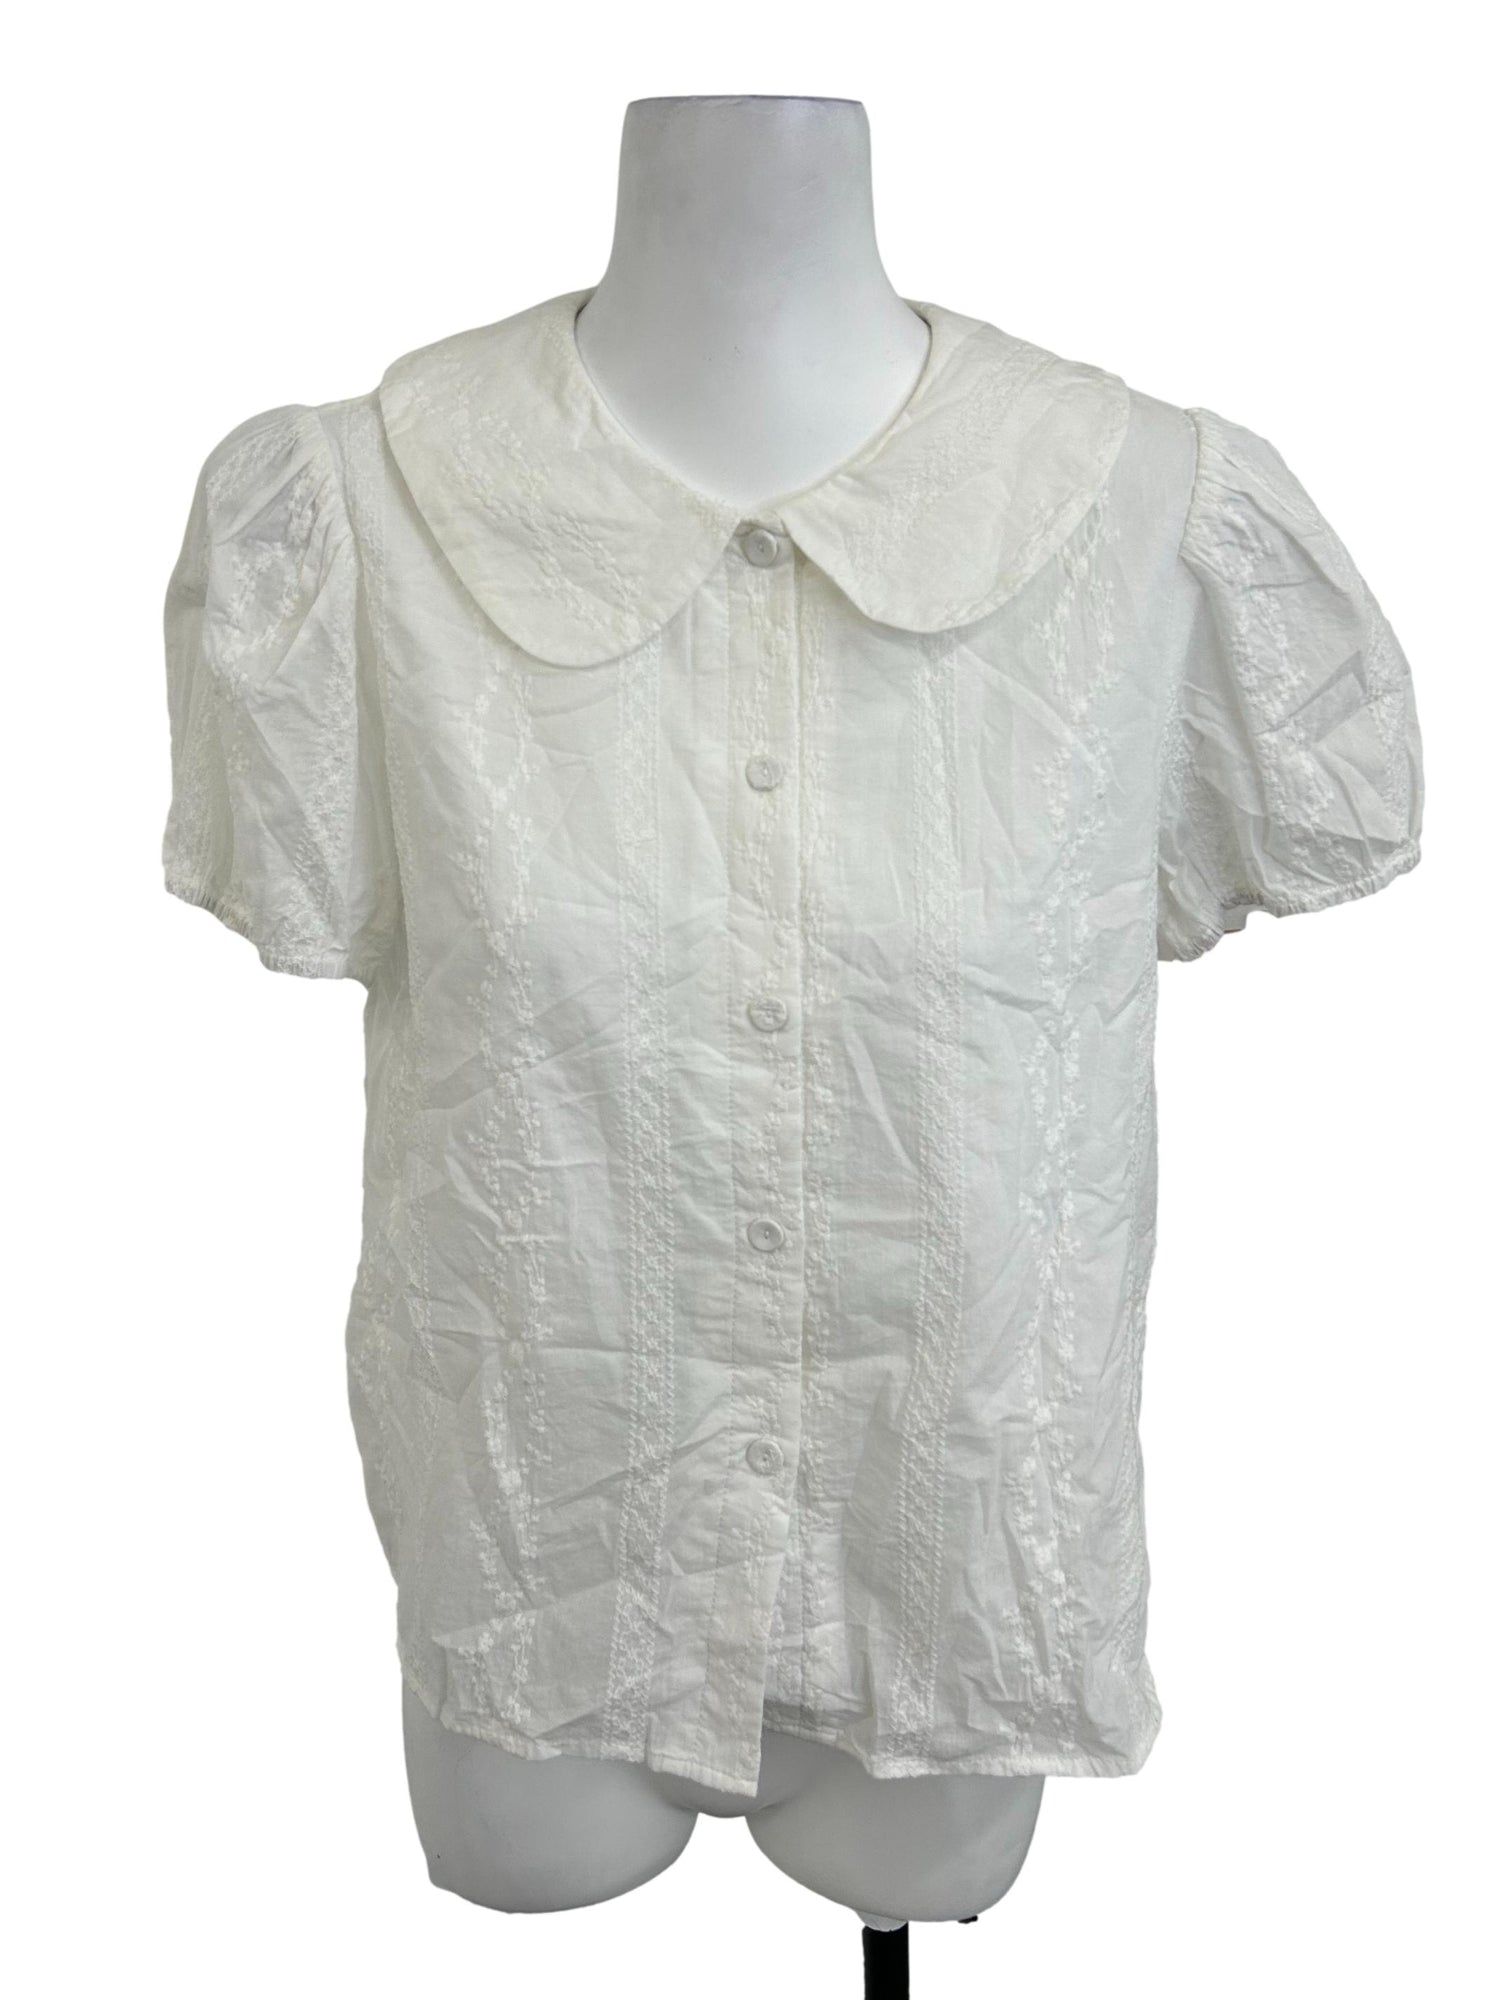 Peter Pan Collar Shirt - White - Pomelo Fashion